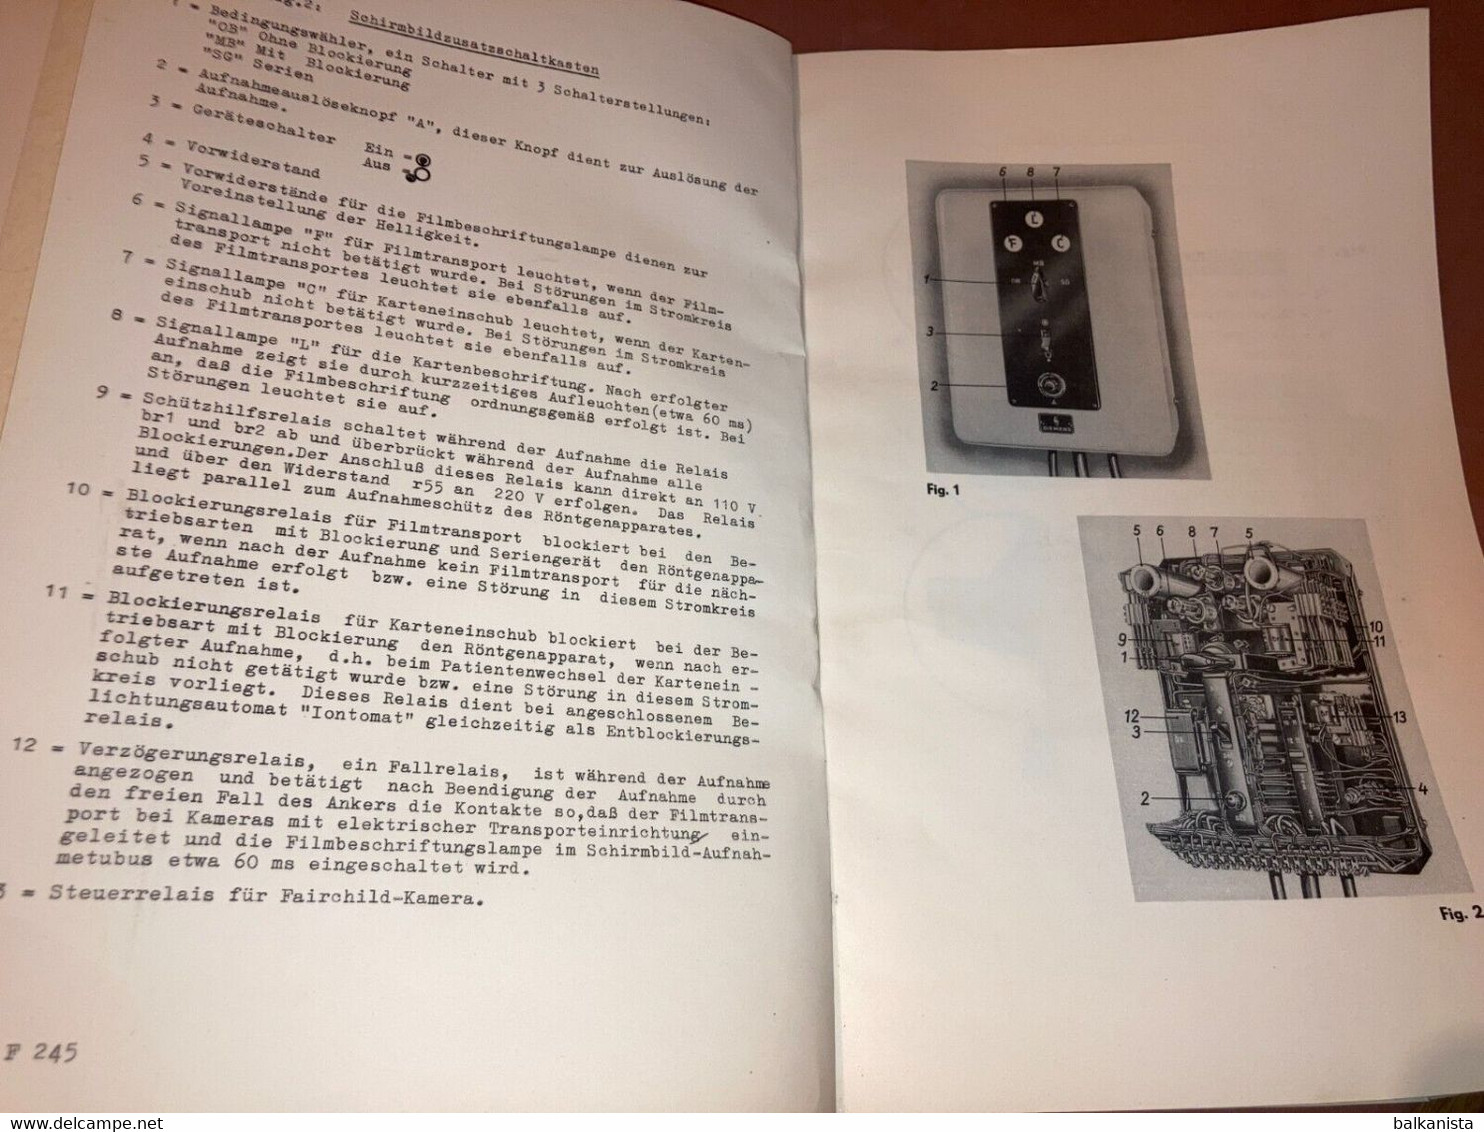 Siemens X-Ray Radiology - Schirmbild-Zusatz Gebrauchs-Anleitung 1950's Booklet - Maschinen